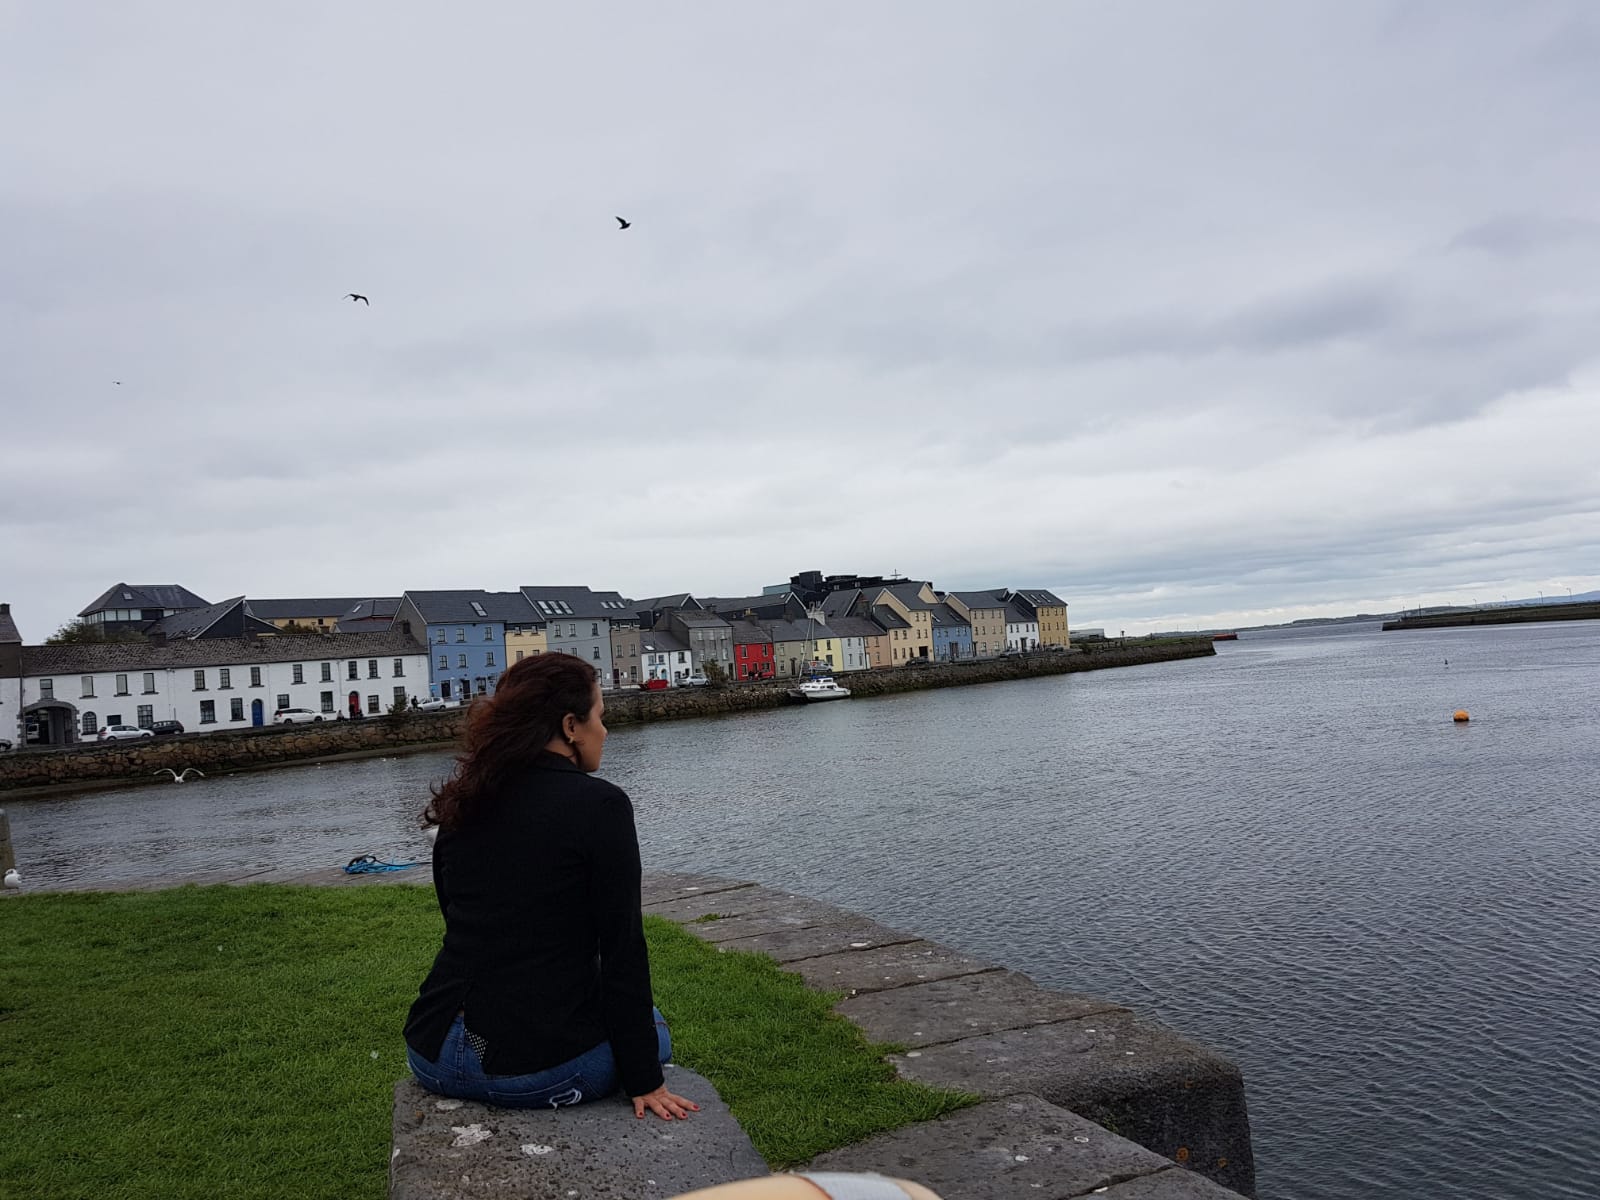 Atlantic Language Galway